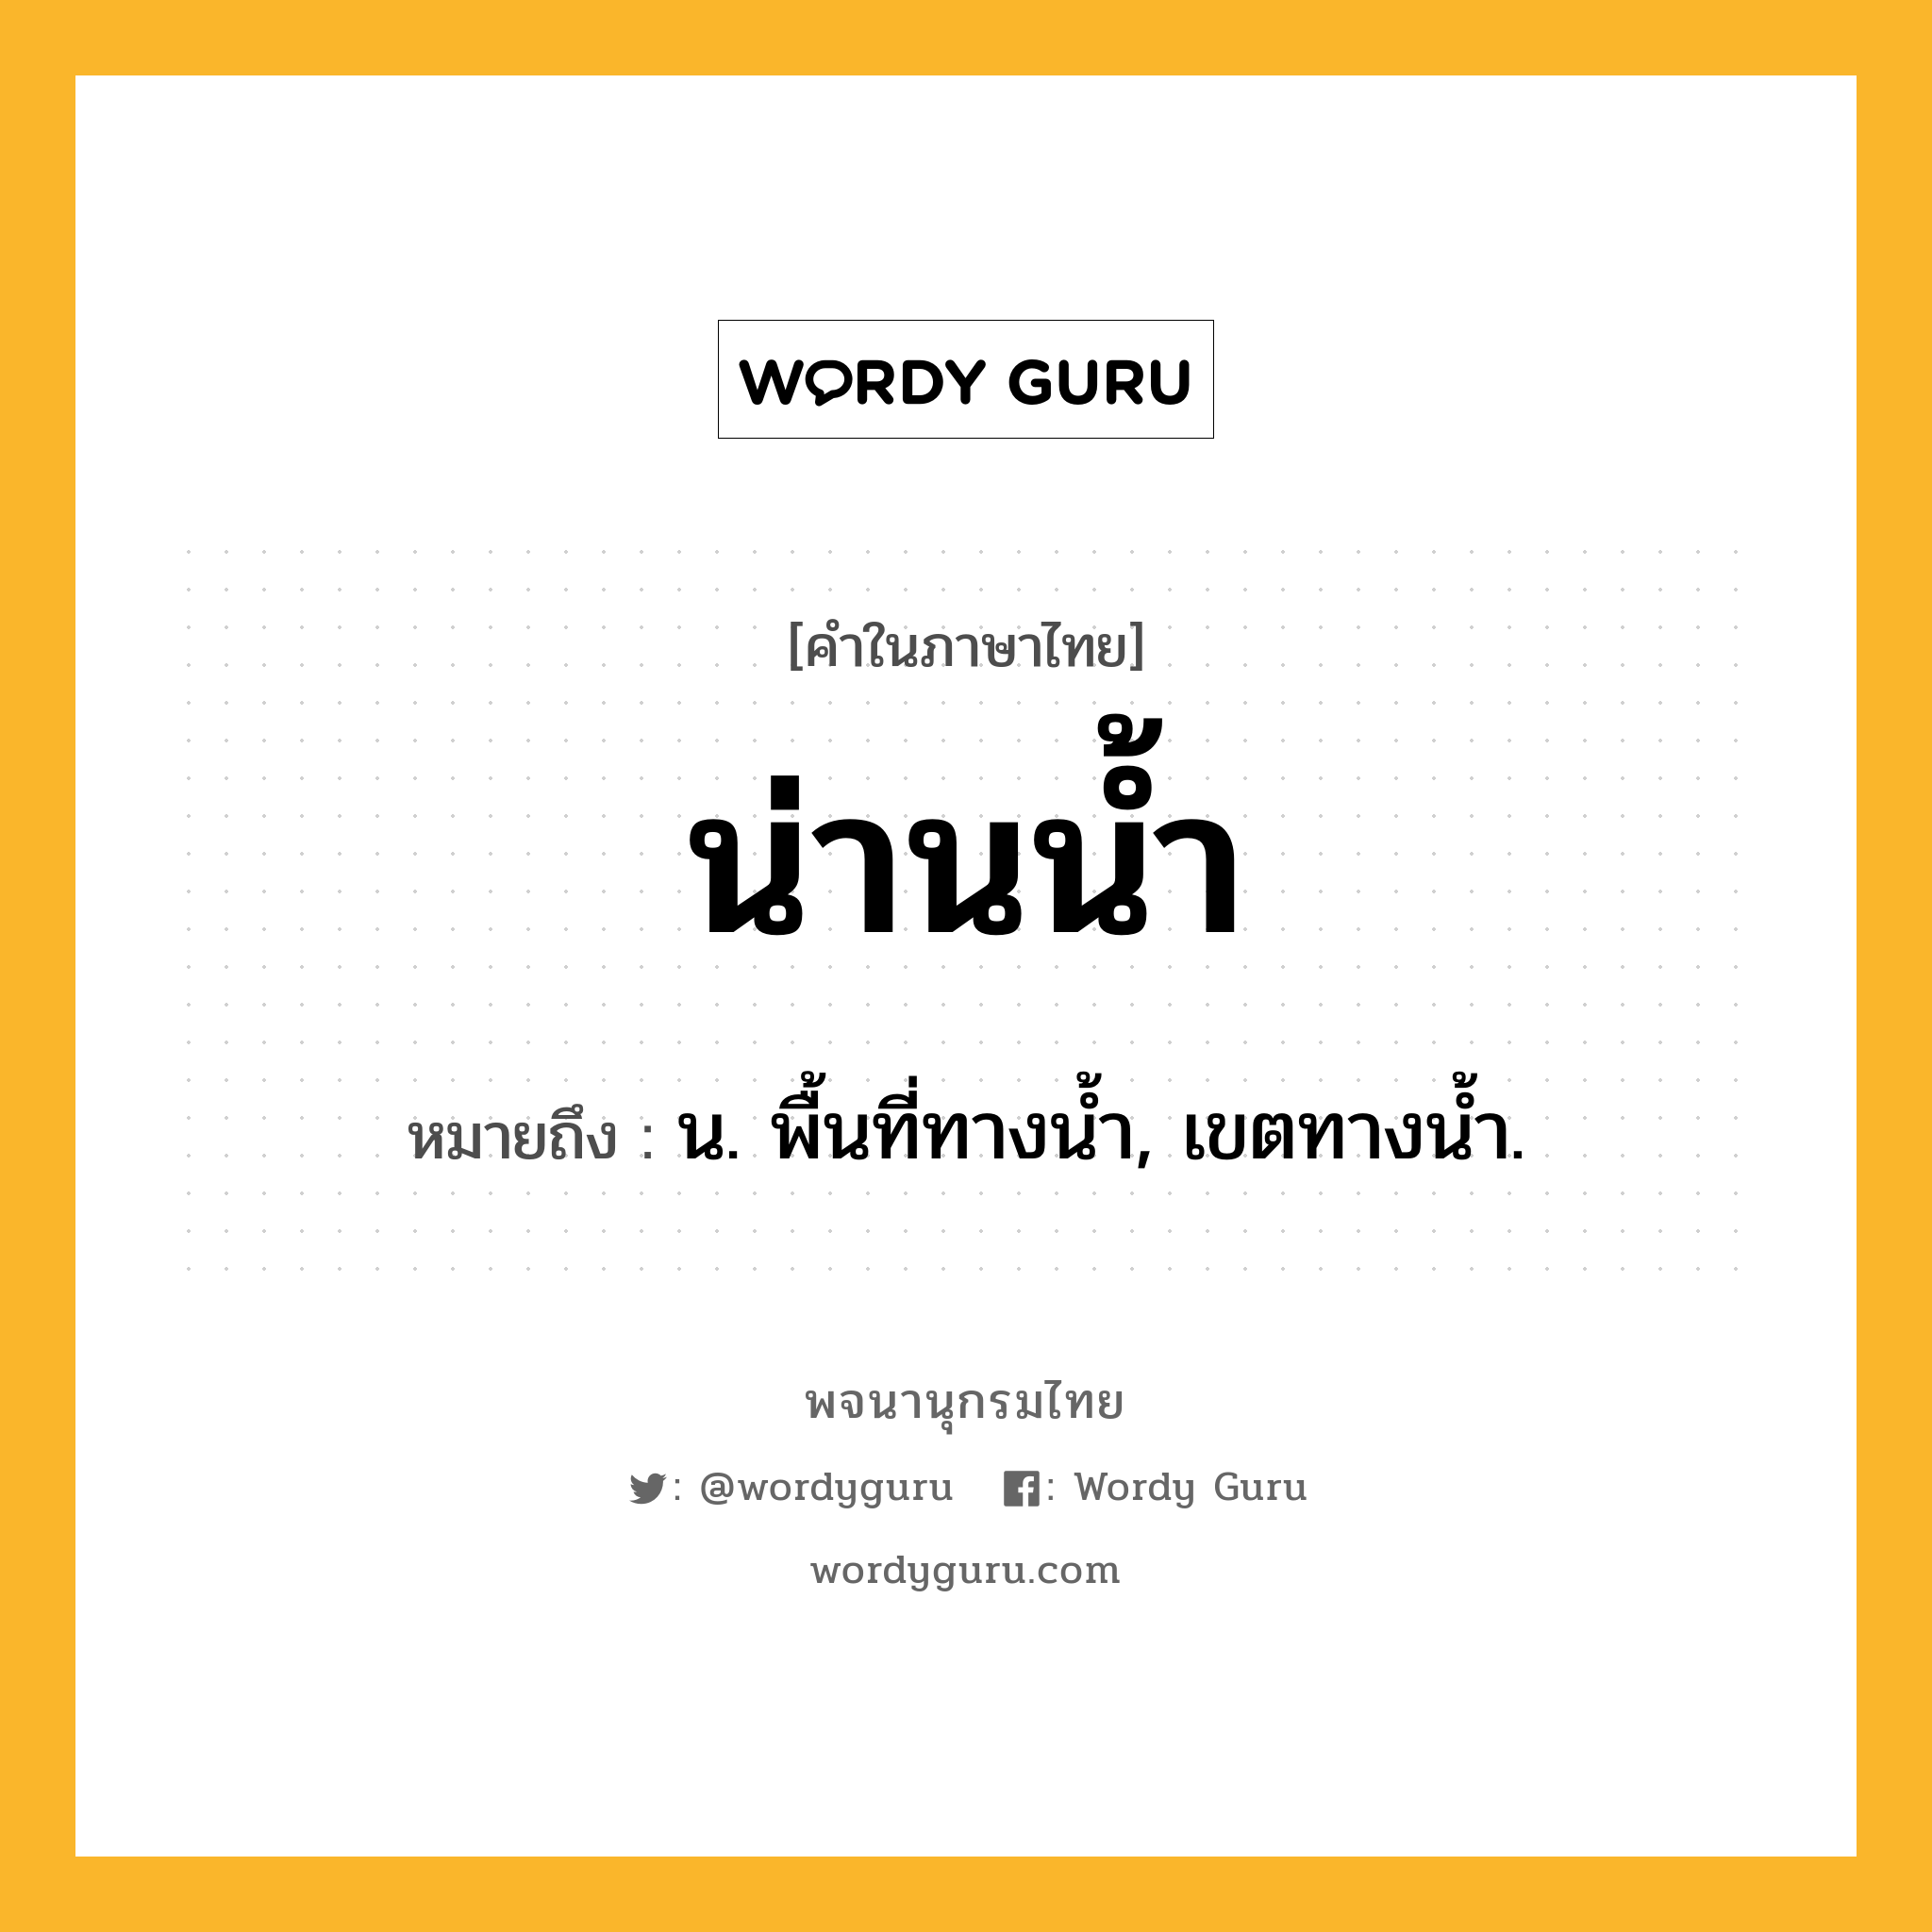 น่านน้ำ หมายถึงอะไร?, คำในภาษาไทย น่านน้ำ หมายถึง น. พื้นที่ทางนํ้า, เขตทางนํ้า.